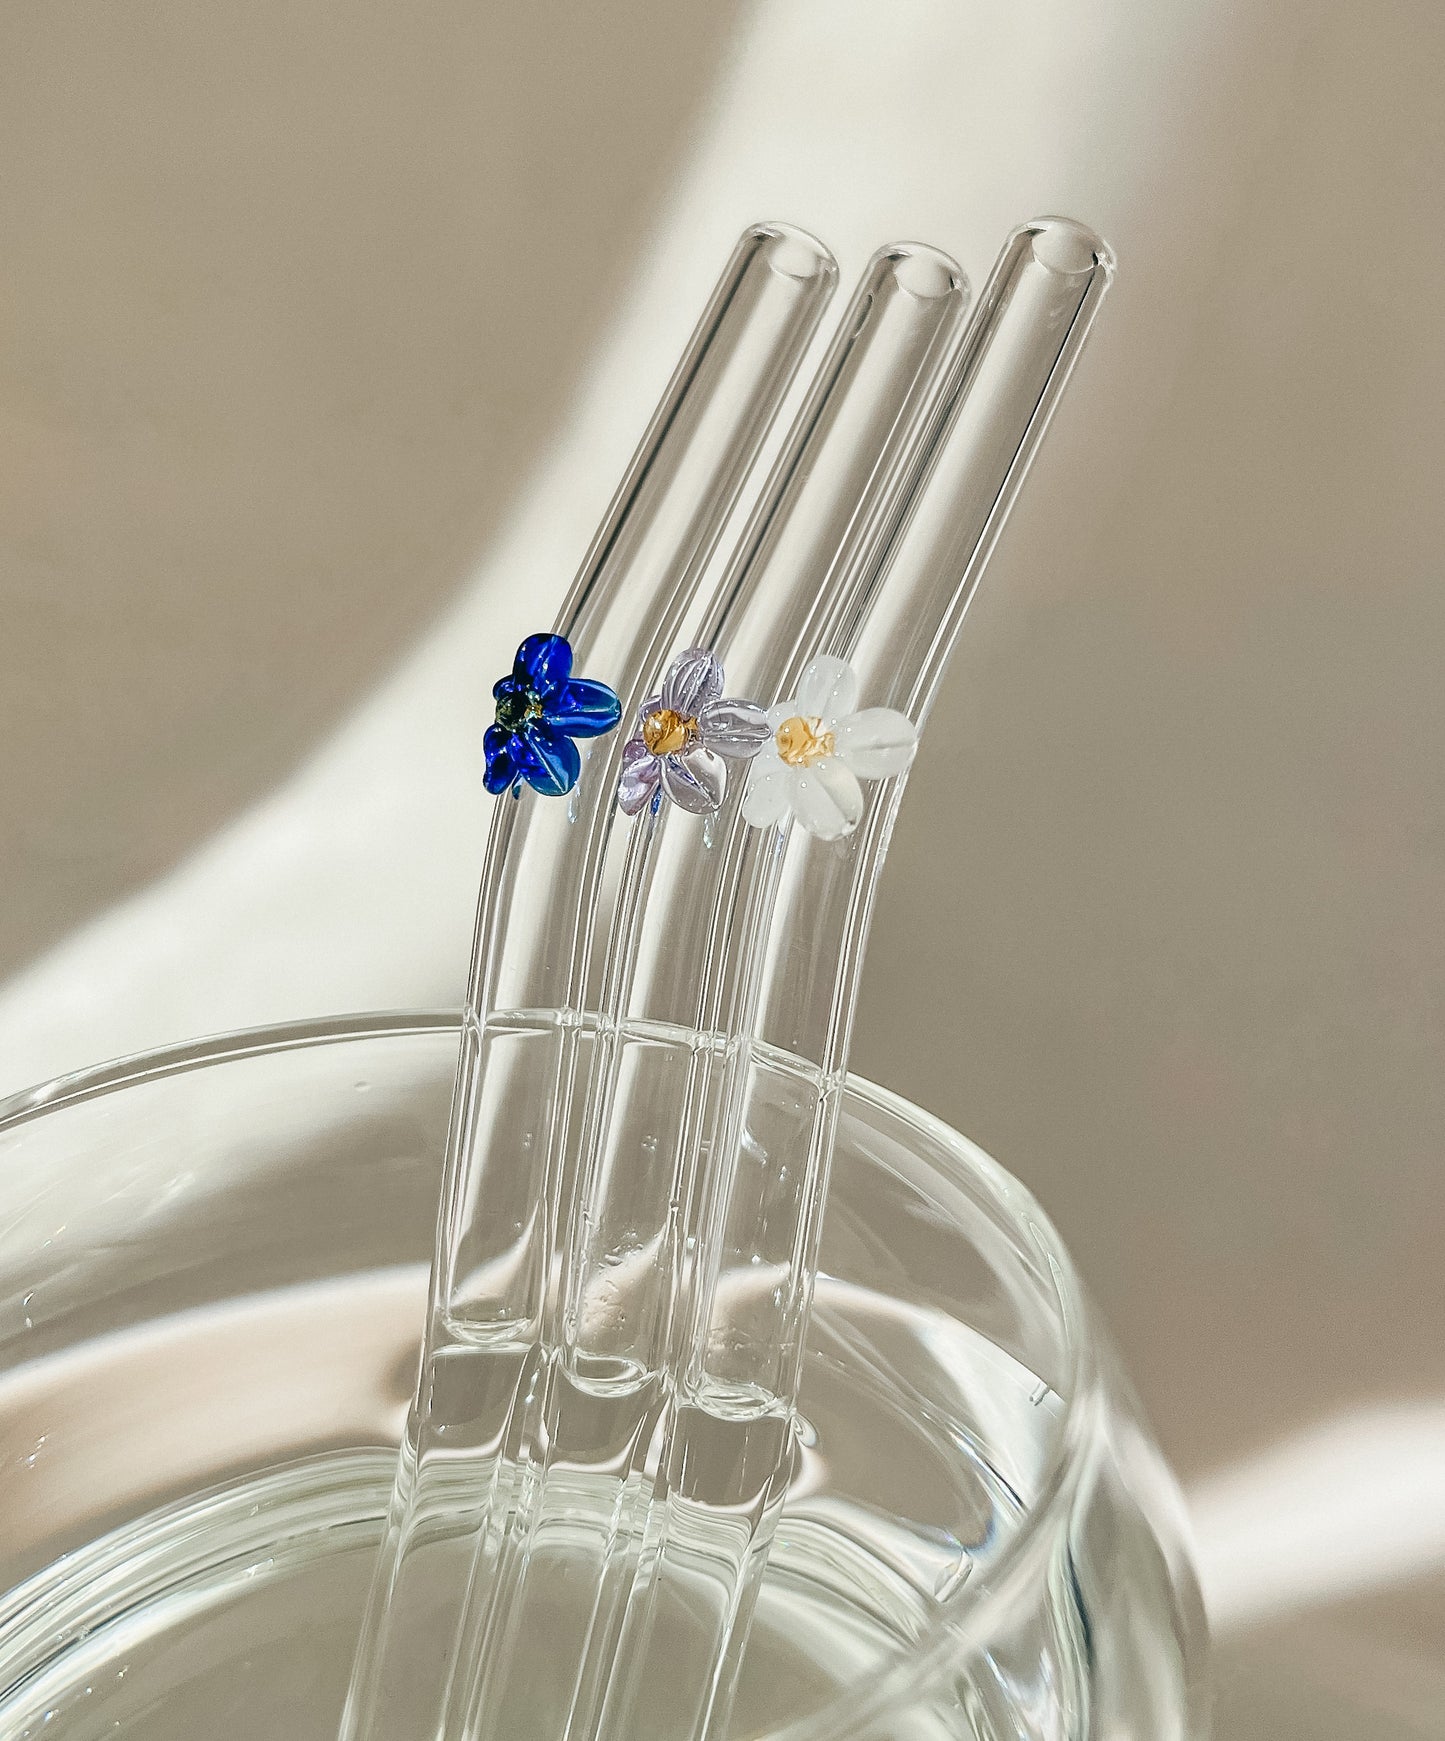 Trinkhalm aus Glas mit Blume